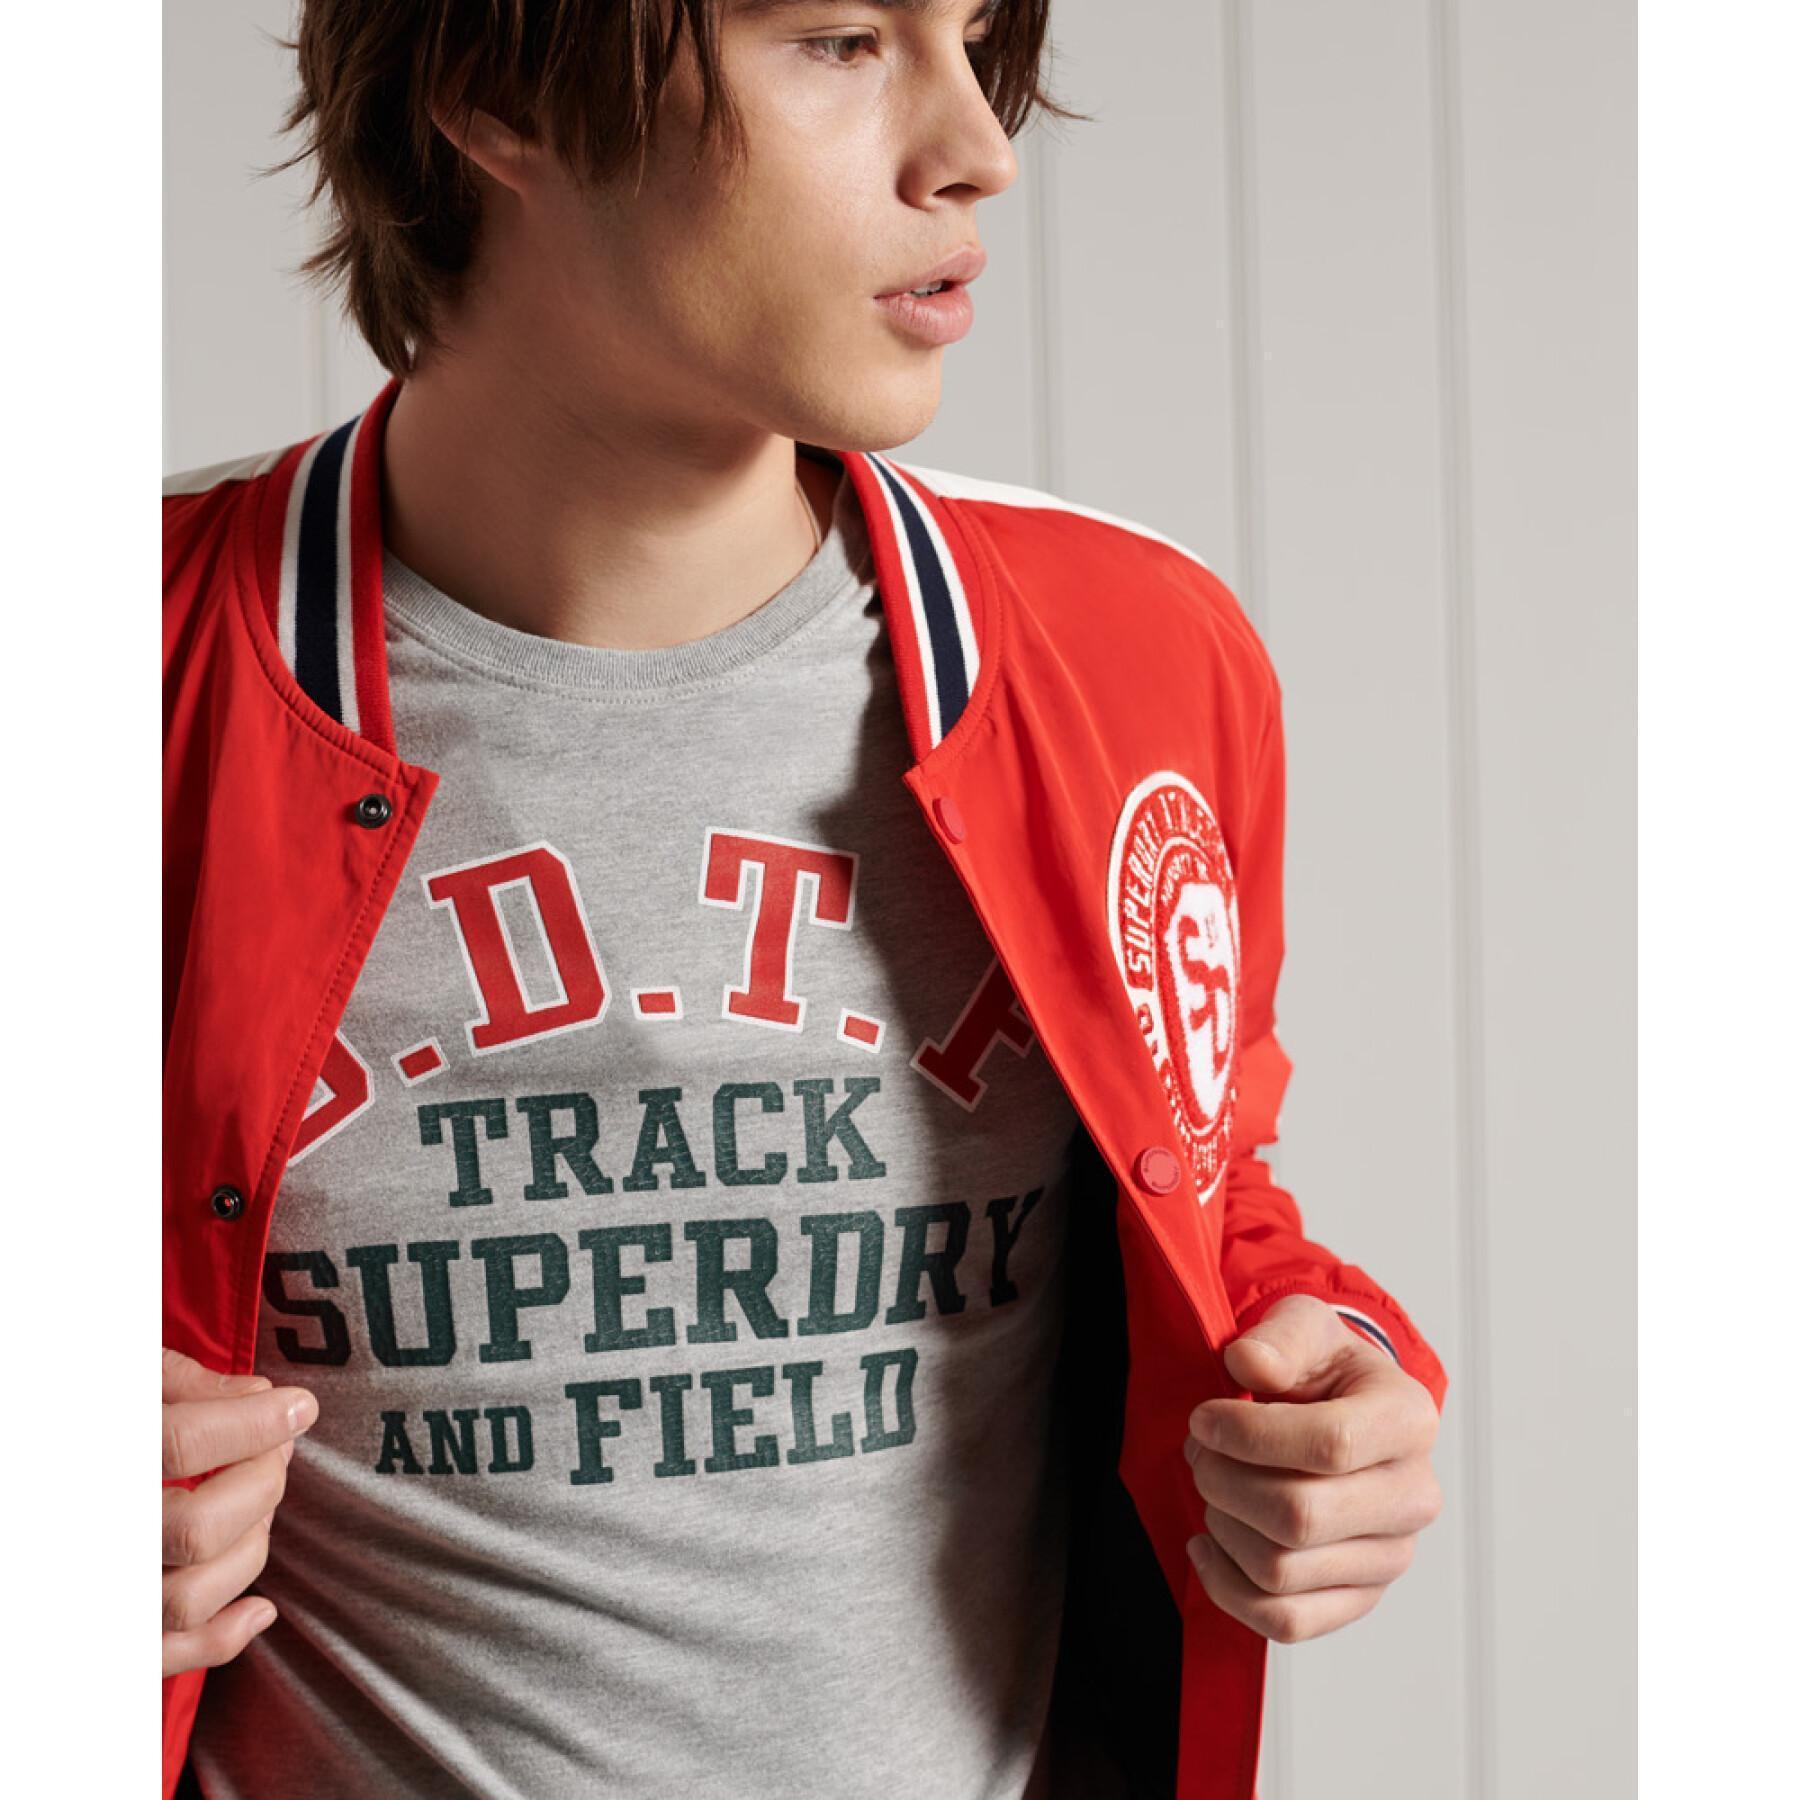 Camiseta ligera con diseño de pista y campo Superdry